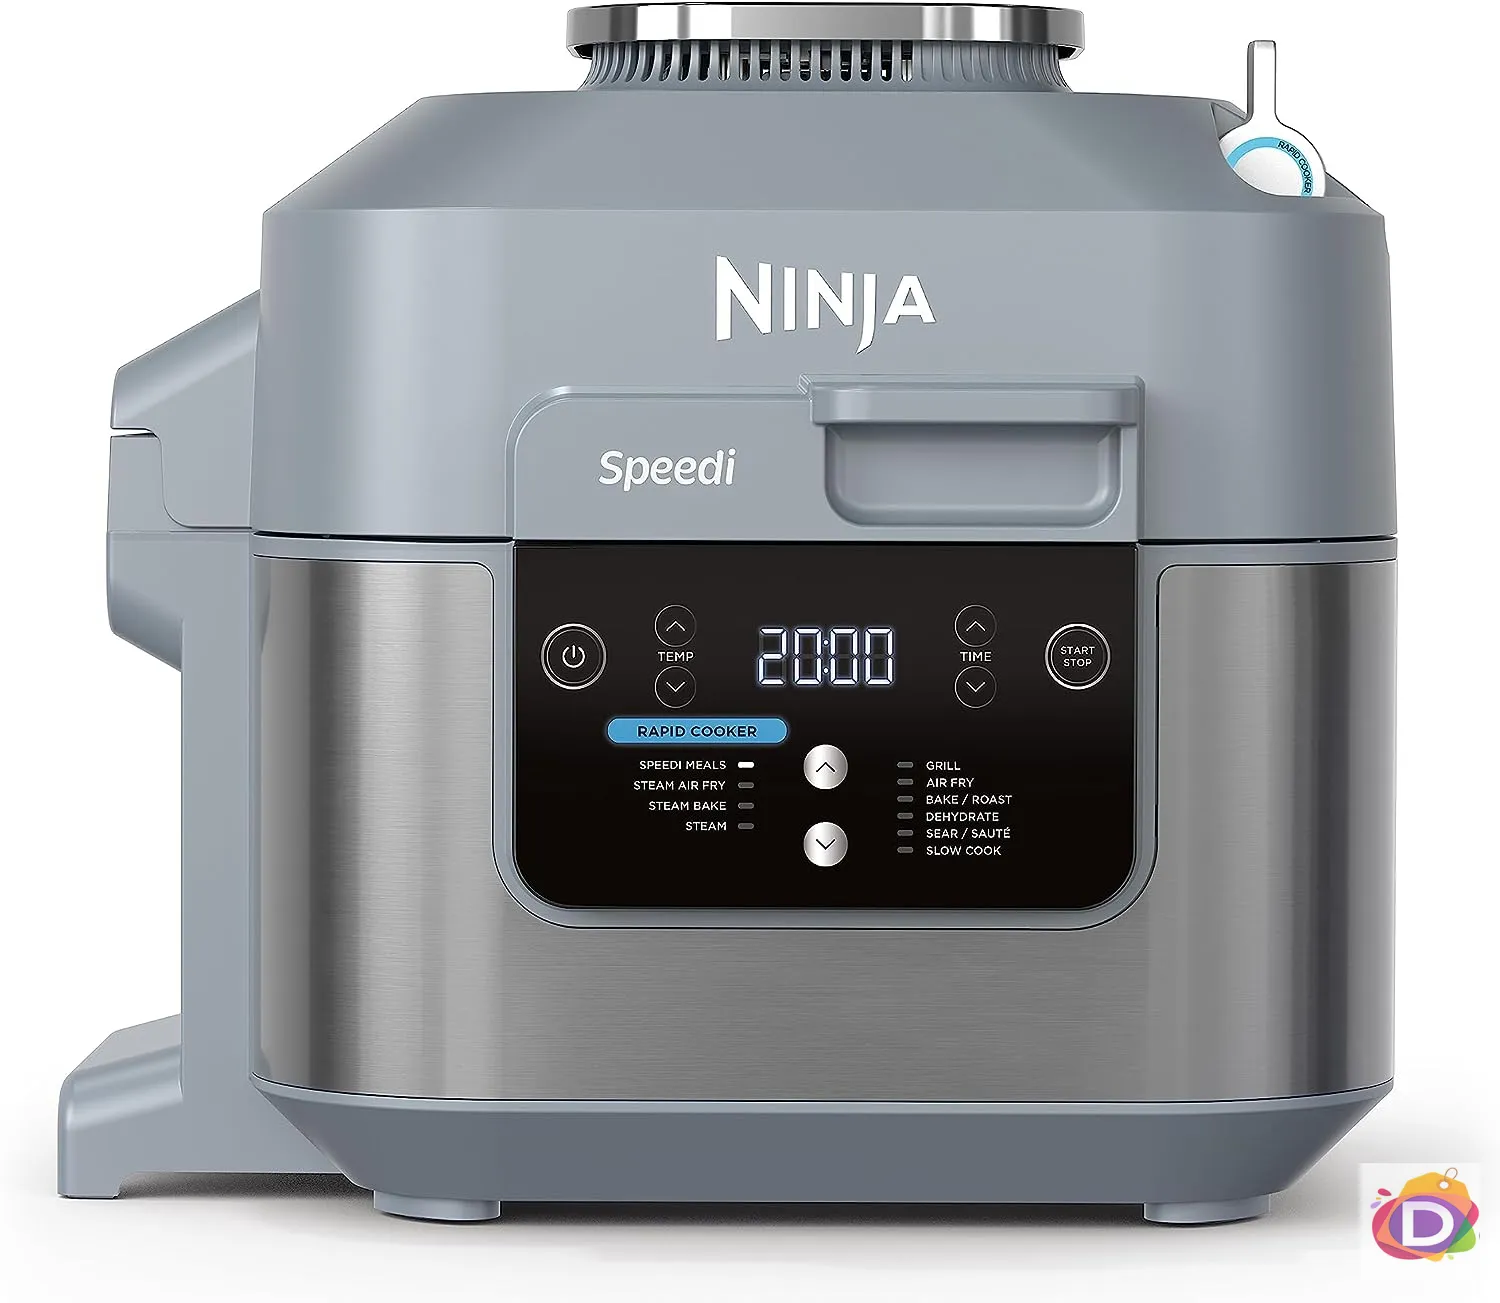 Мултикукър Ninja Speedi ON400EU, 1760W, 5.7 литра - Код D2173 1